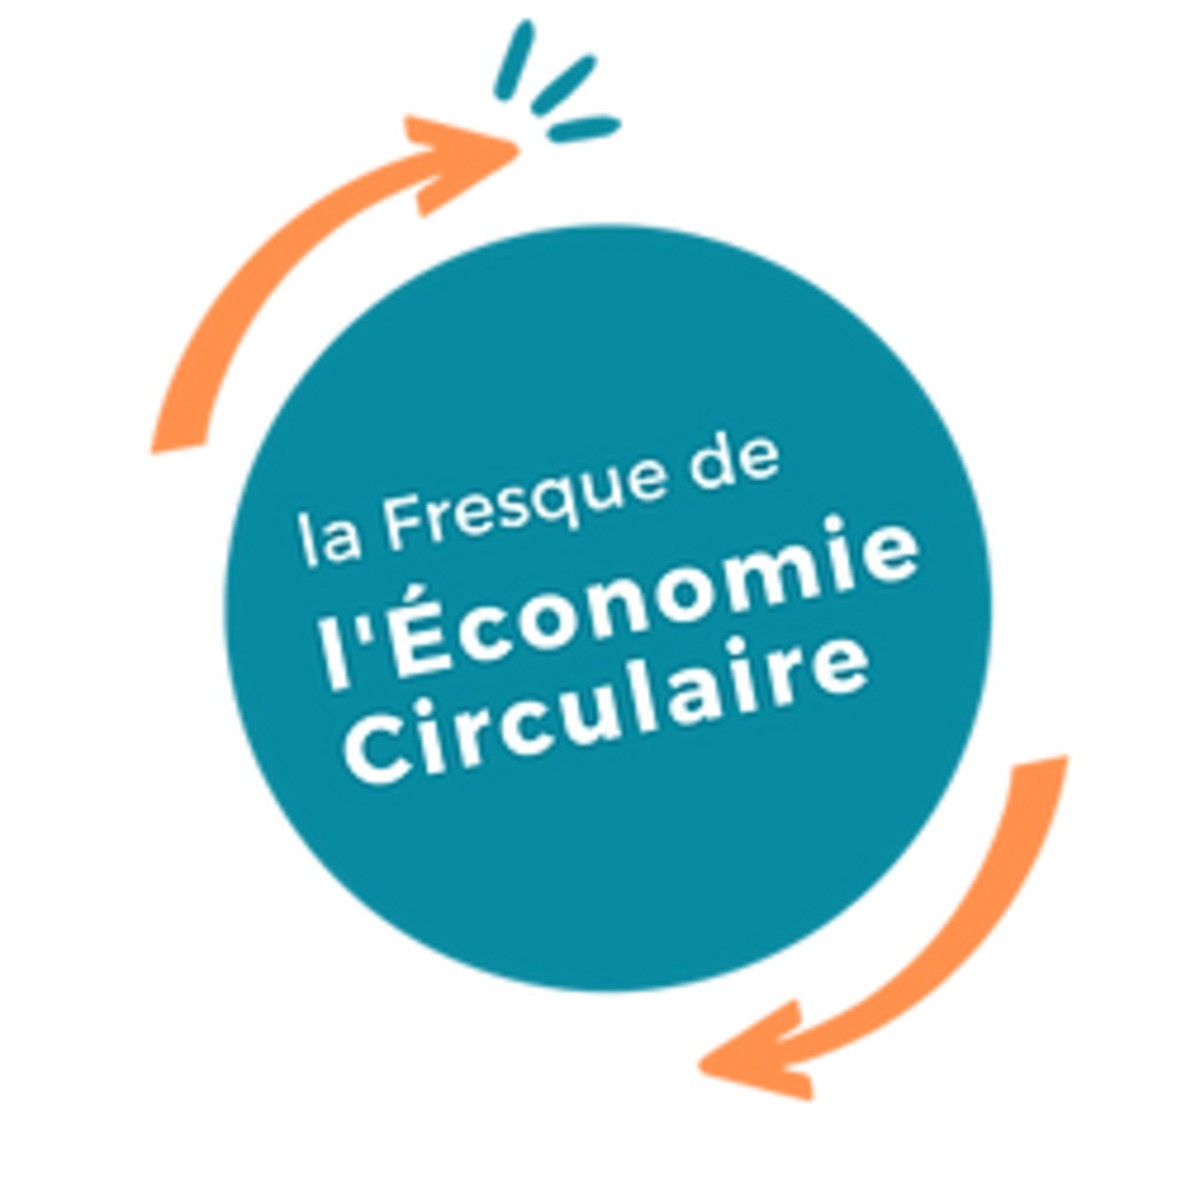 Atelier Fresque de l'économie circulaire